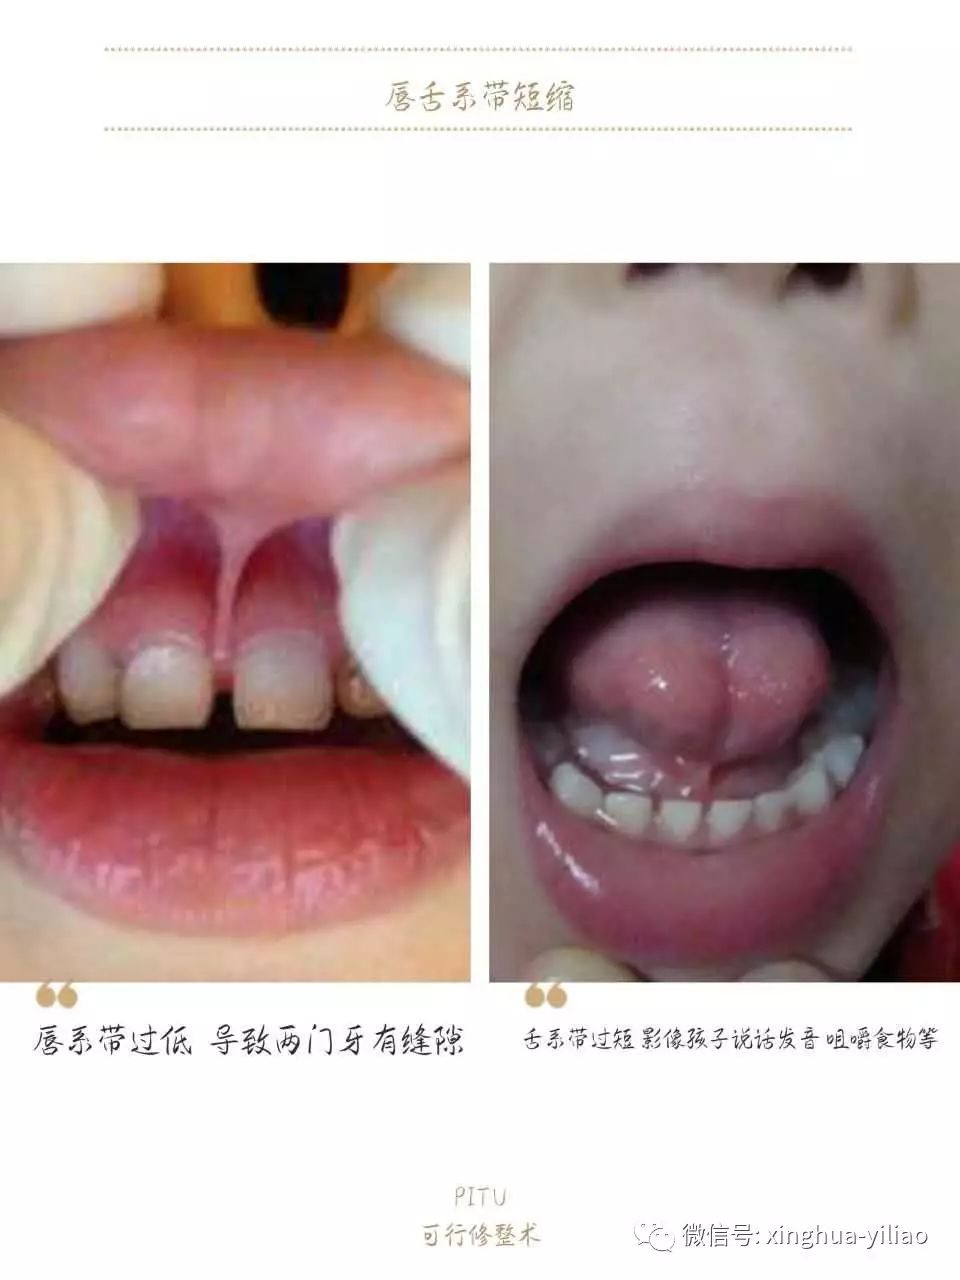 兴华口腔诊疗中心舌系带手术最佳治疗时间:1岁半—2岁龋齿鹅口疮